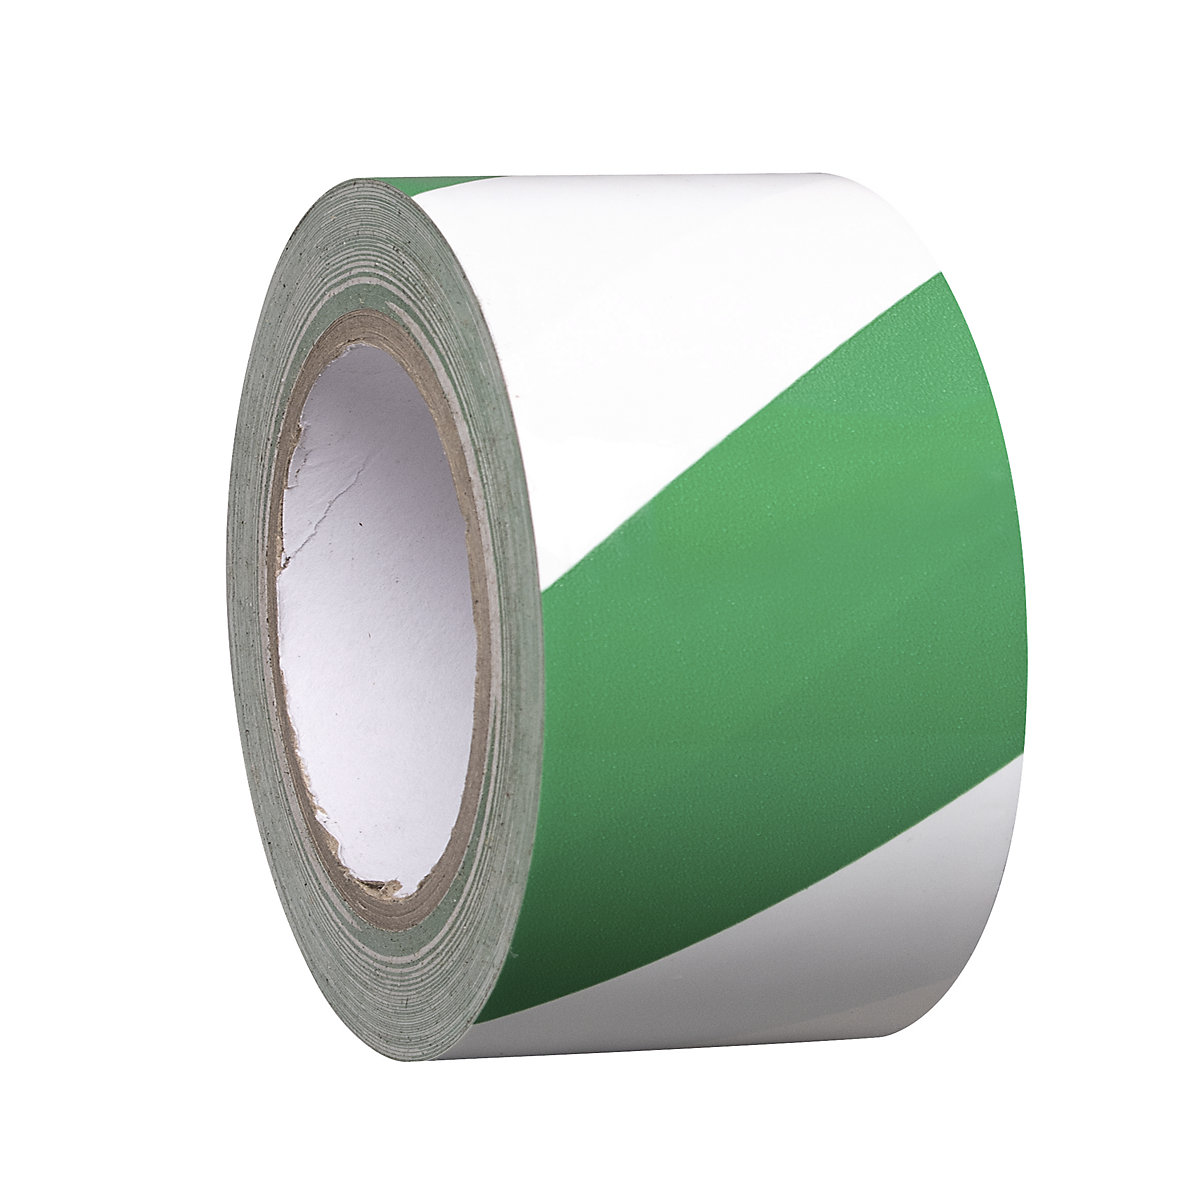 Podlahový značkovací pás z vinylu, dvoubarevný, šířka 75 mm, zelená / bílá, bal.j. 8 rolí-5